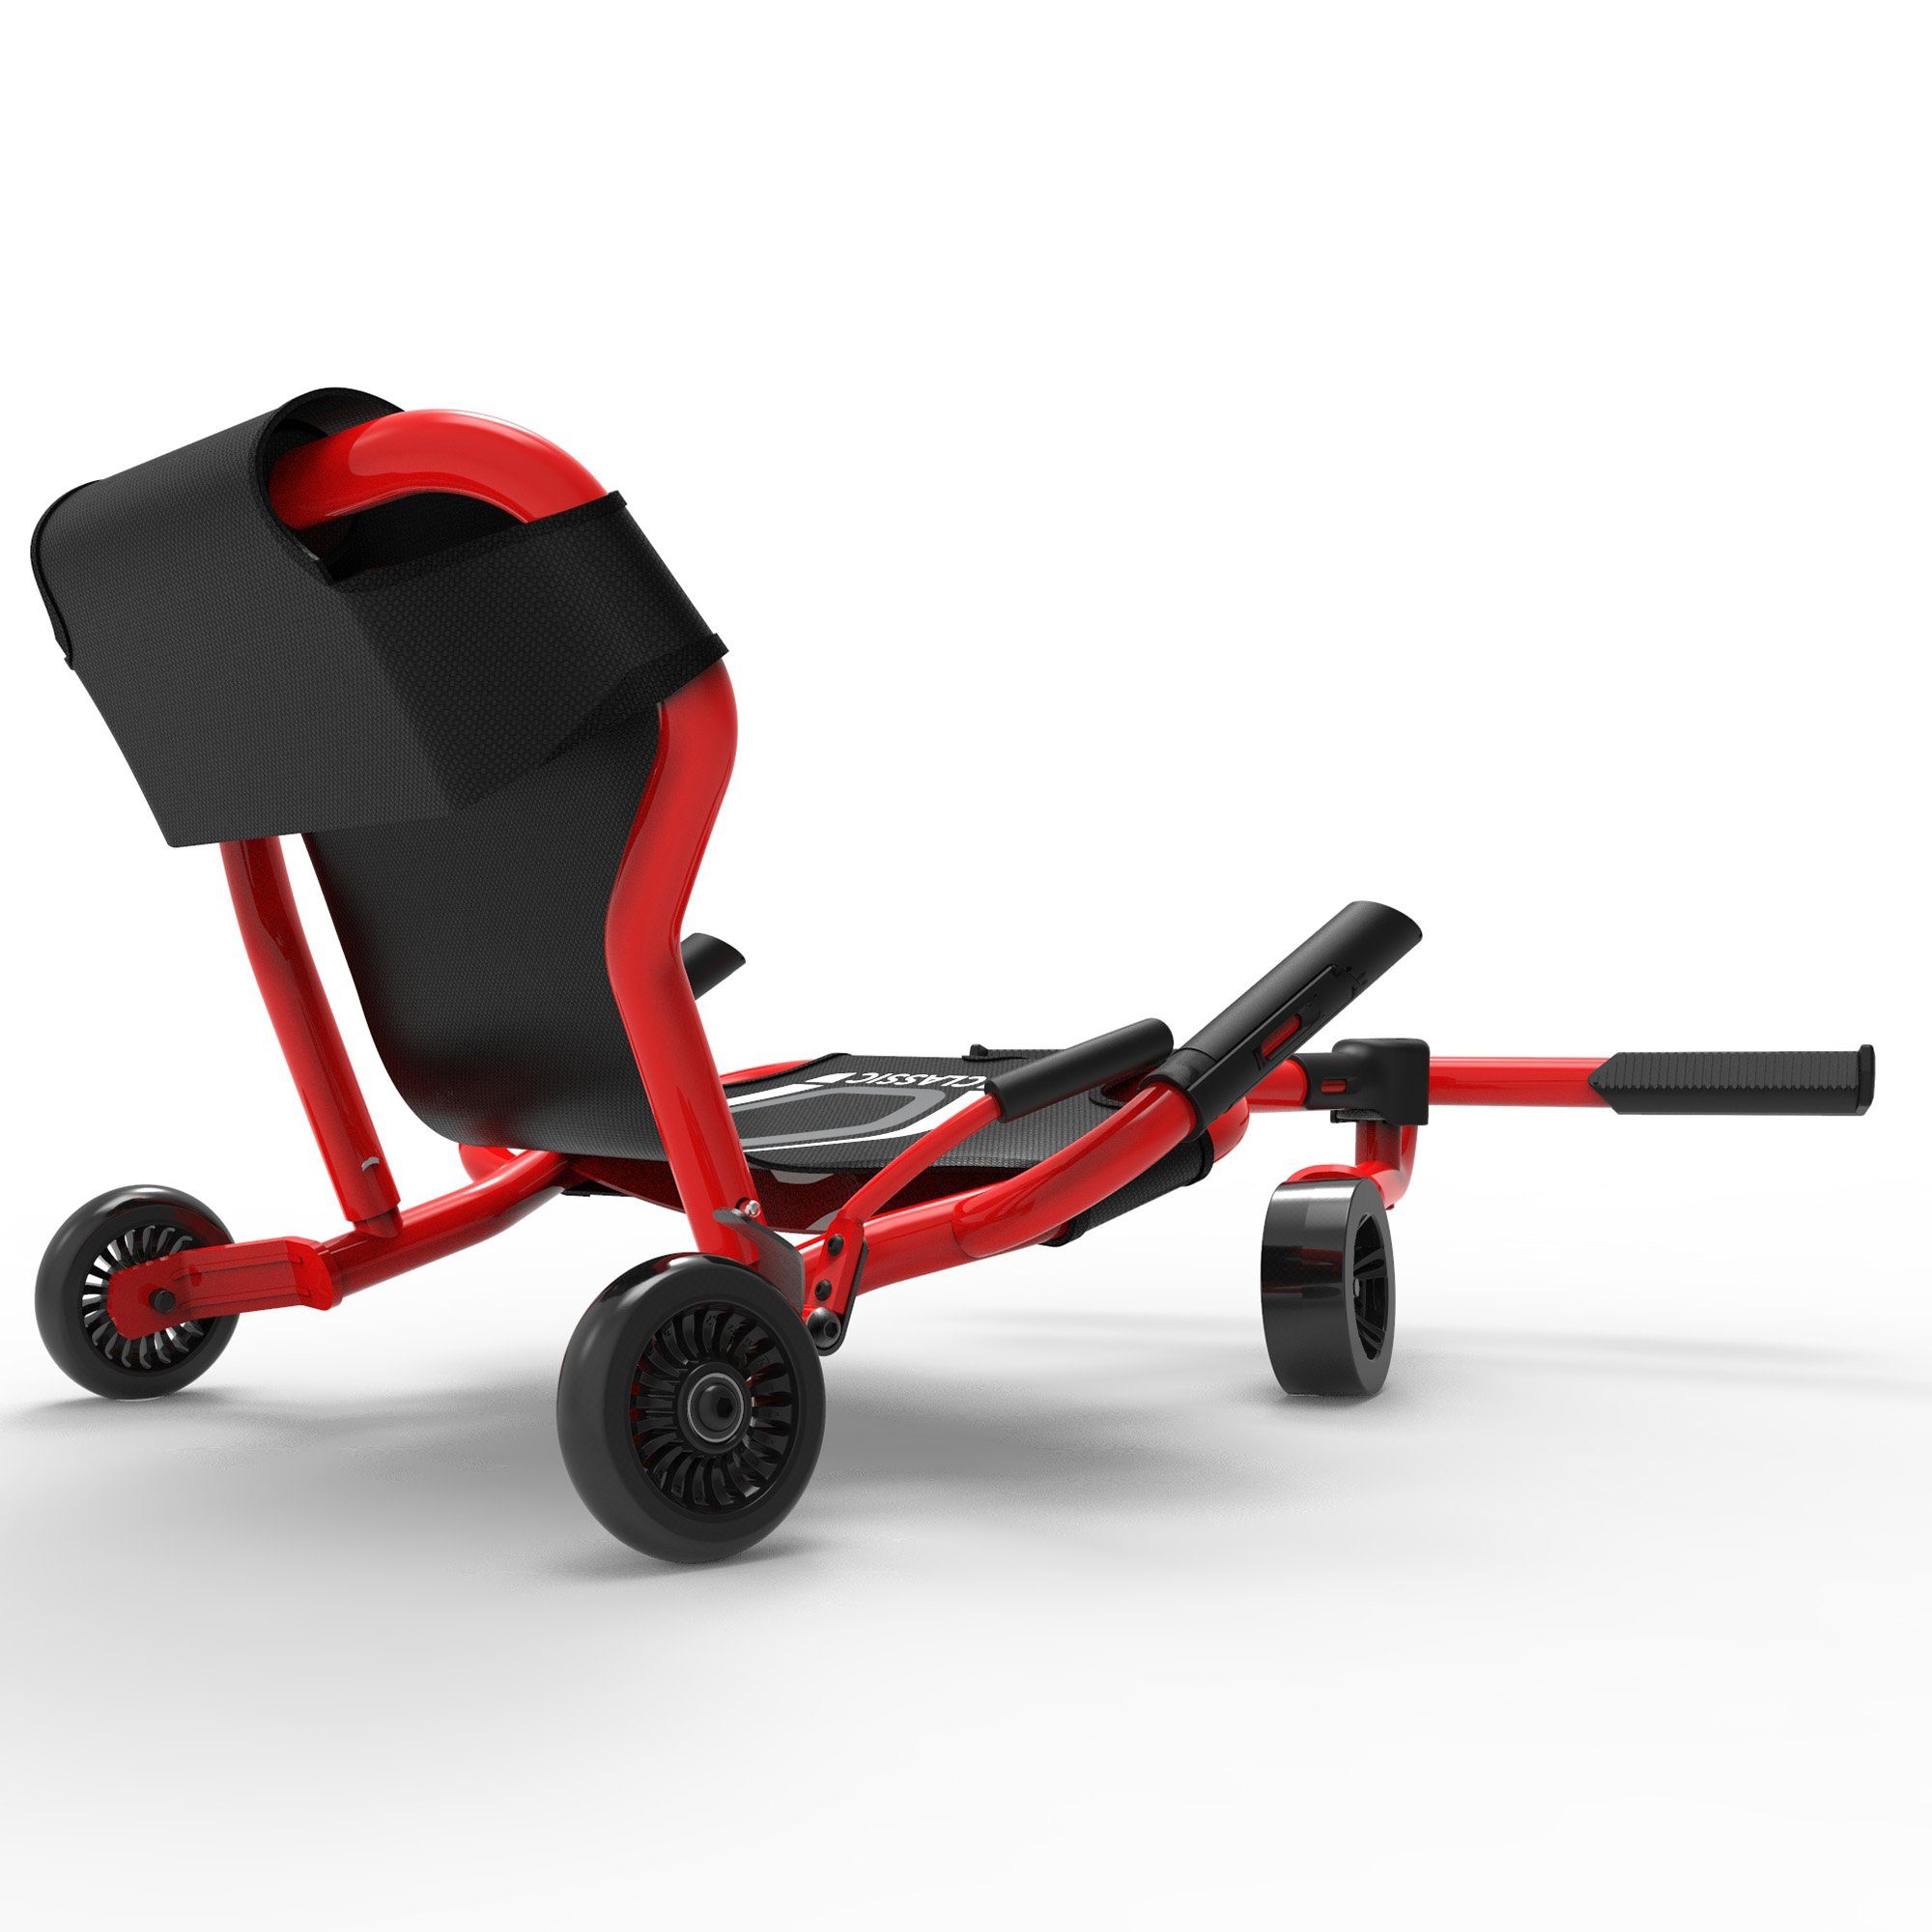 EzyRoller Dreiradscooter Classic X, Kinderfahrzeug Kinder für rot 4 Funfahrzeug Dreiradscooter Jahre bis ab 14